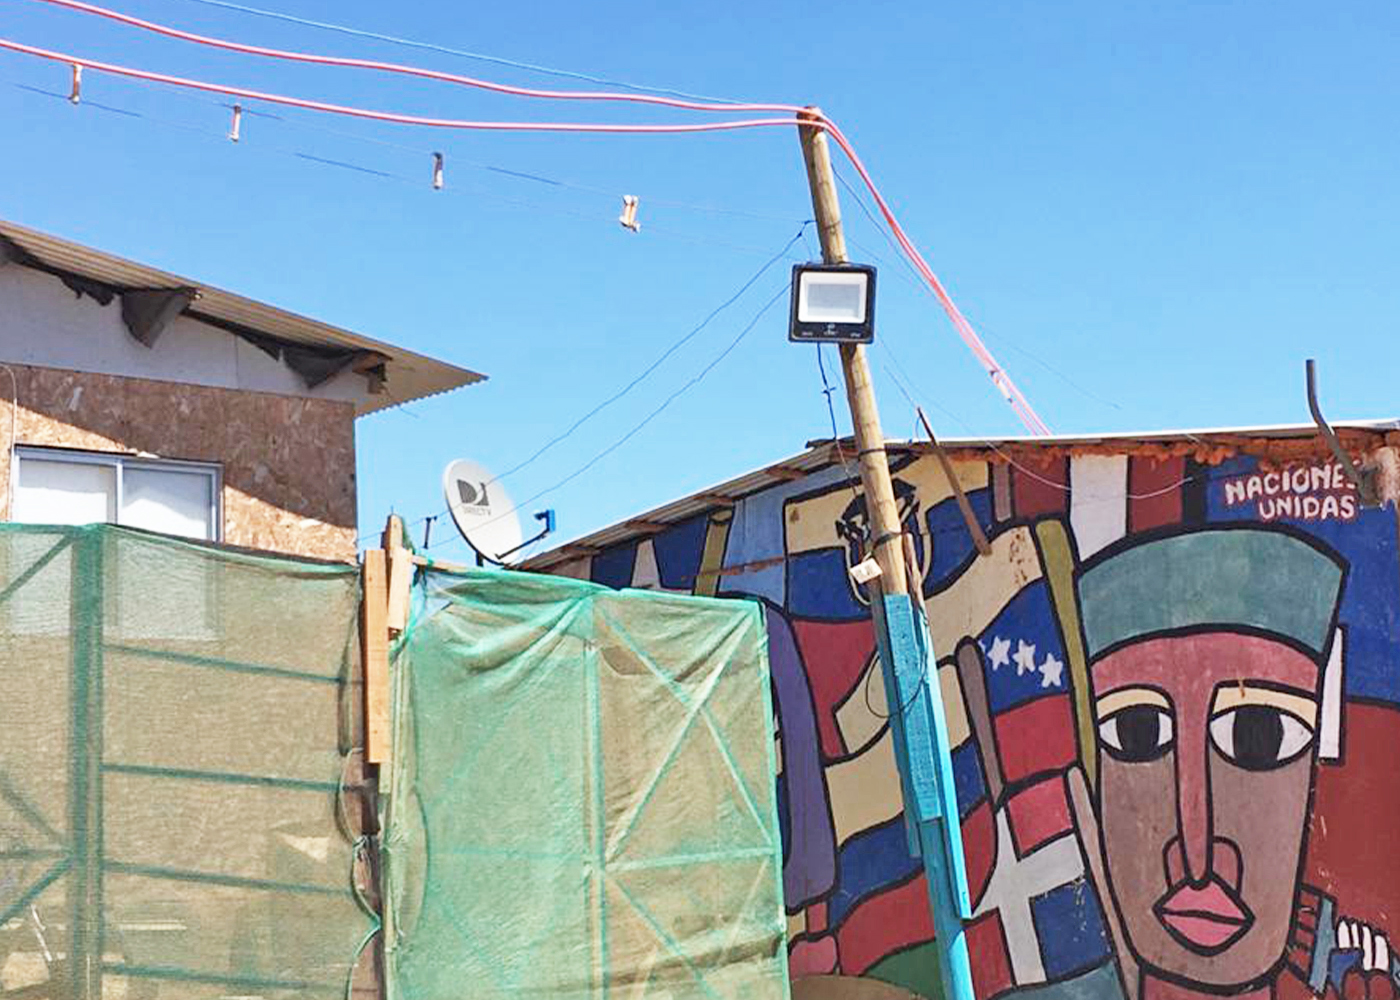 Acceso a la vivienda y vulnerabilidad residencial de migrantes latinoamericanos en el Gran Valparaíso